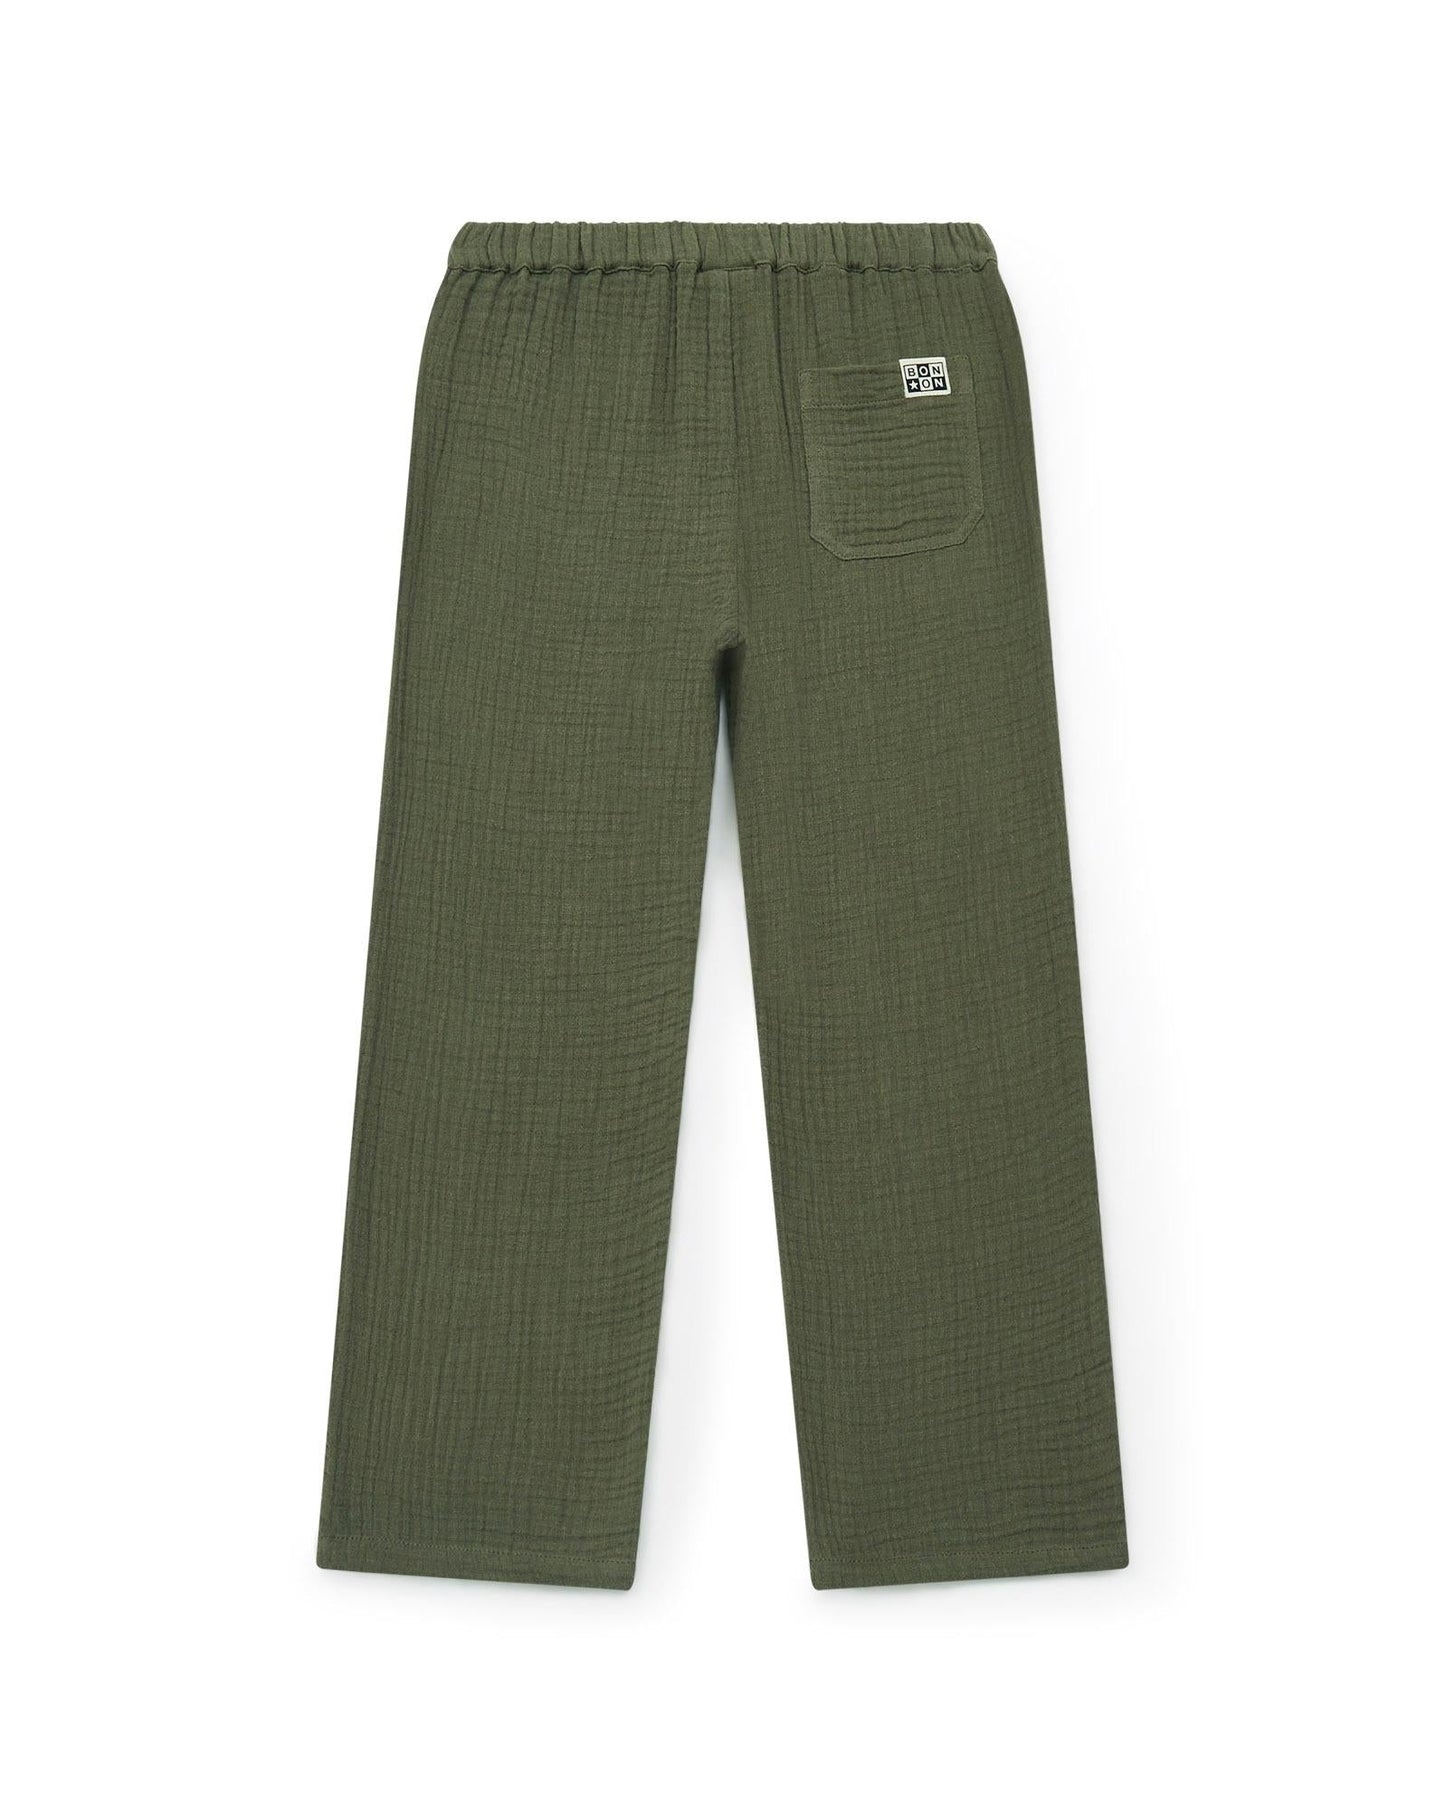 Pantalon - Batcha vert gaze de coton biologique